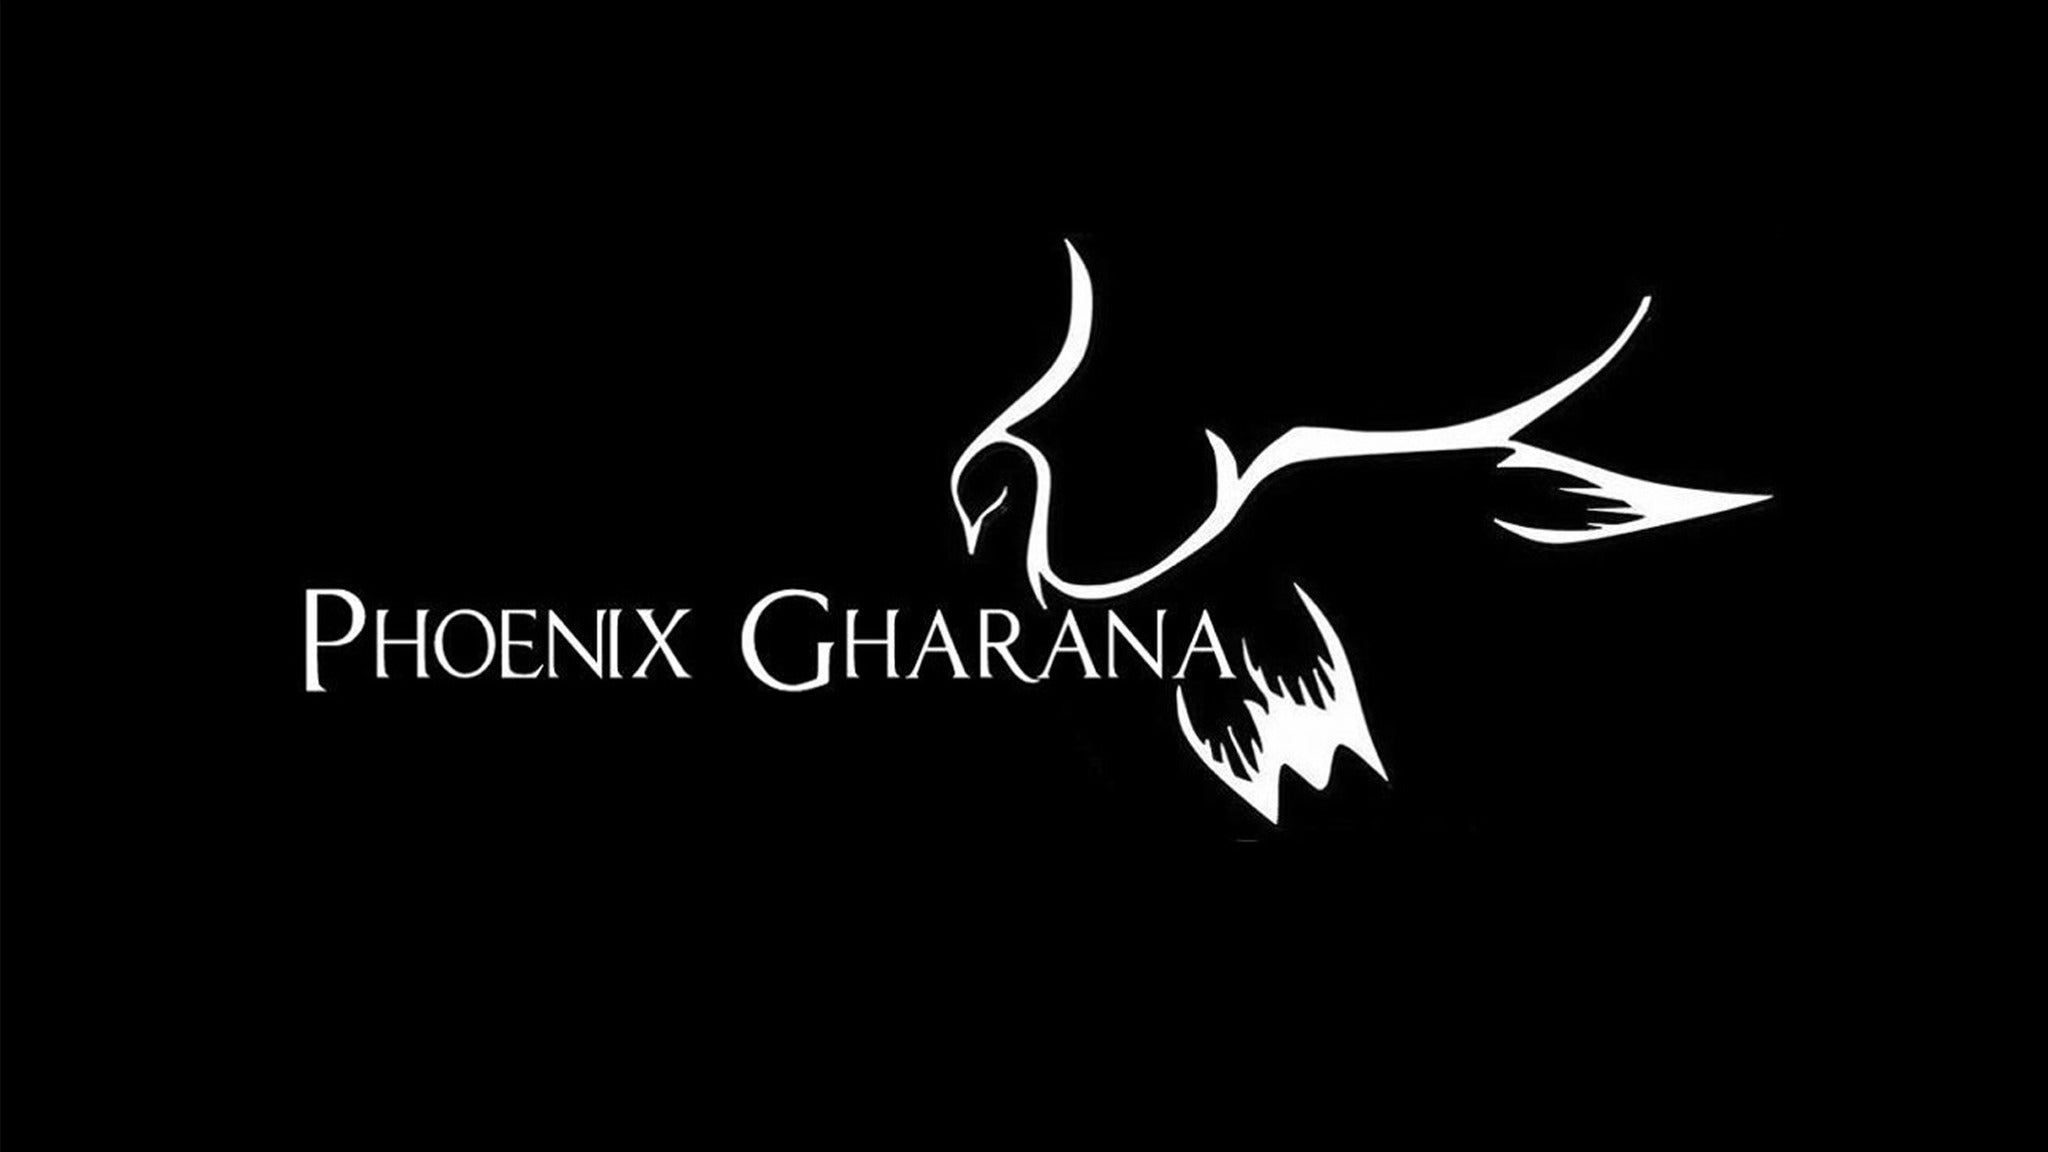 Phoenix Gharana School Concert Series presale information on freepresalepasswords.com